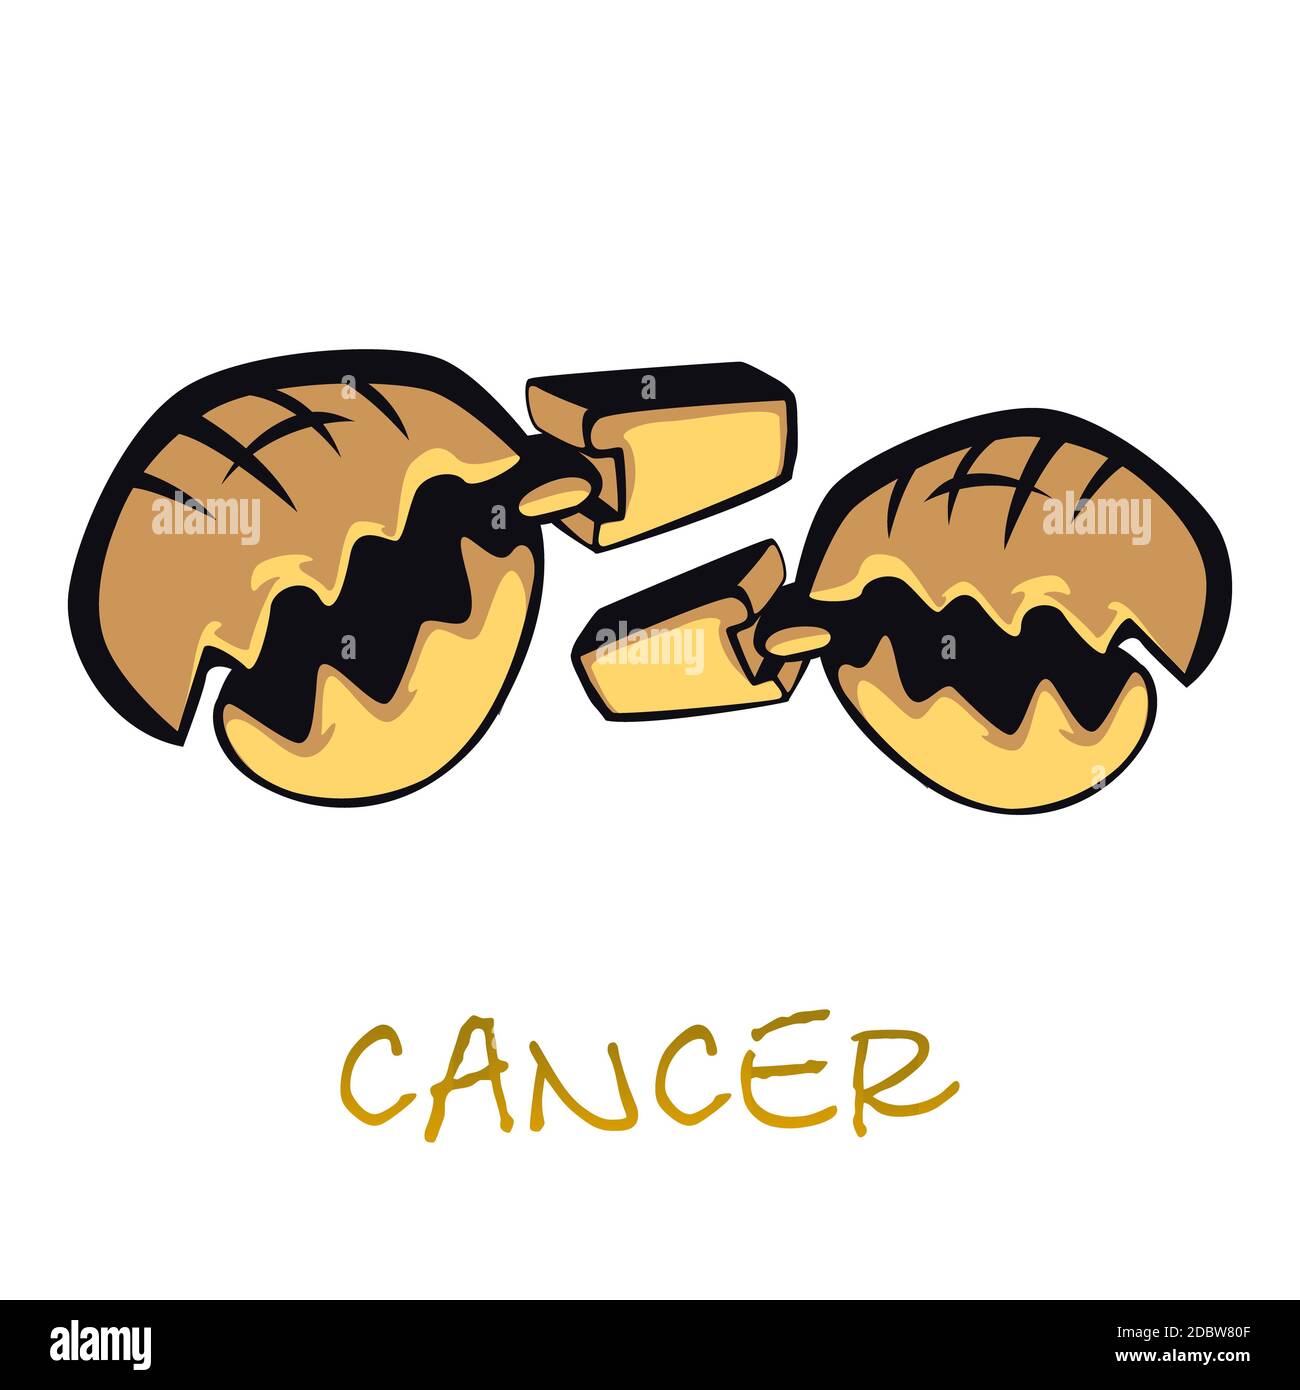 Cancer signe zodiaque accessoire dessin animé plat illustration vectorielle. Le crabe griffe des objets. Caractéristiques astrologiques du symbole de l'eau, ha animal crustacé de mer Banque D'Images